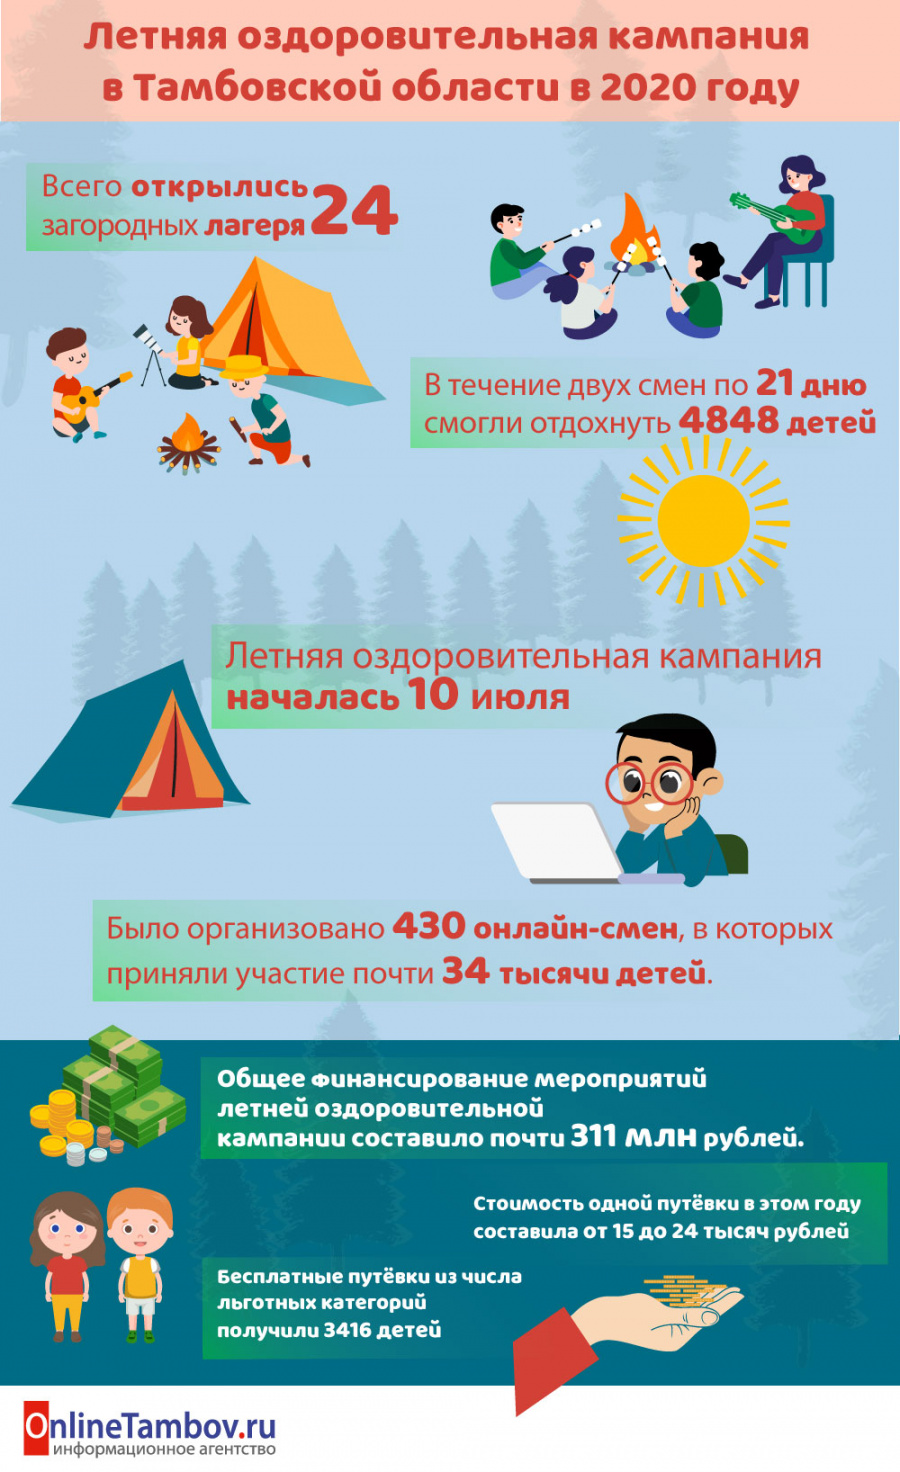 Летняя оздоровительная кампания в Тамбовской области в 2020 году